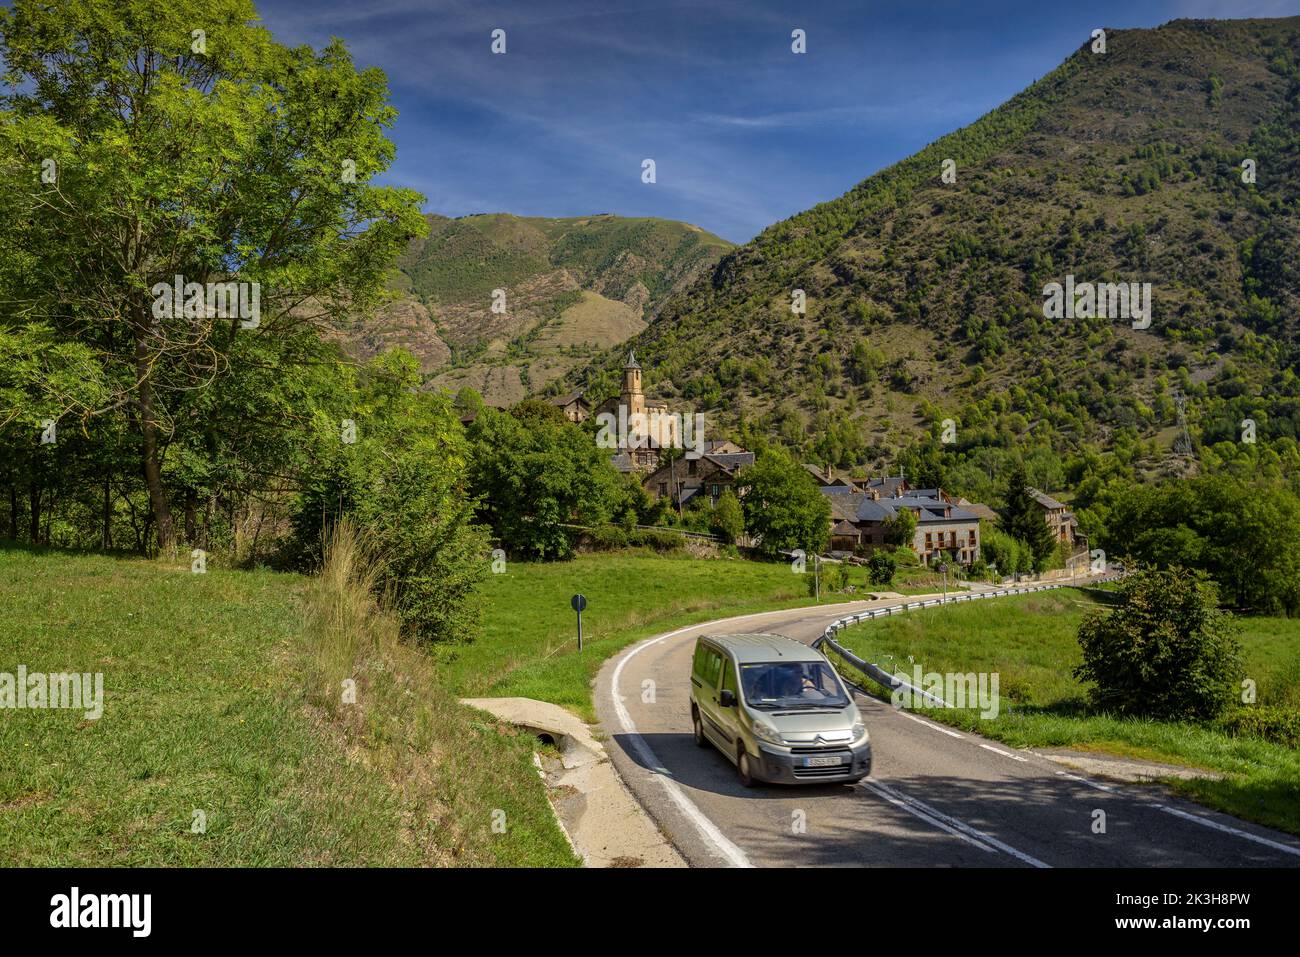 Villaggio di Lladrós nella valle di Cardós, con un ambiente verde e primaverile alla fine dell'estate (Pallars Sobirà Lleida Catalonia Spagna Pirenei) Foto Stock